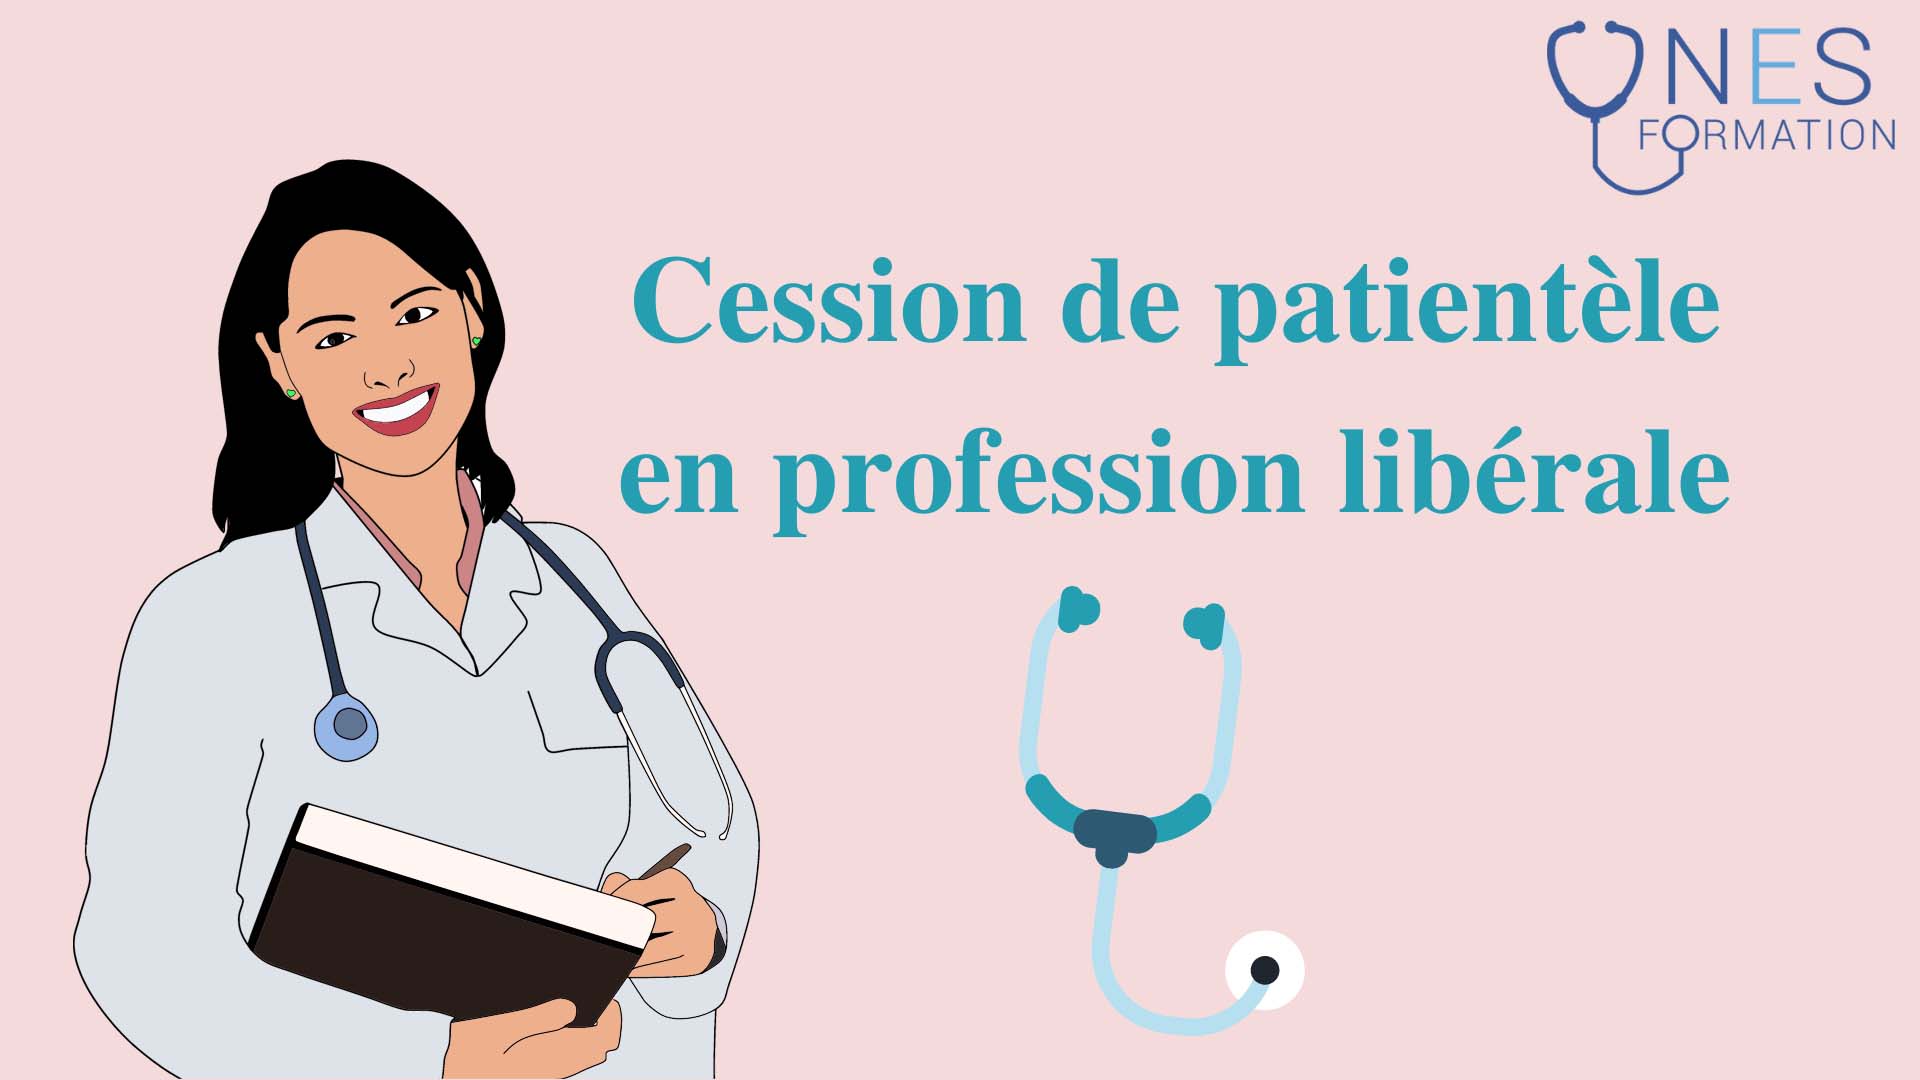 Cession de patientèle infirmiers et professions libérales